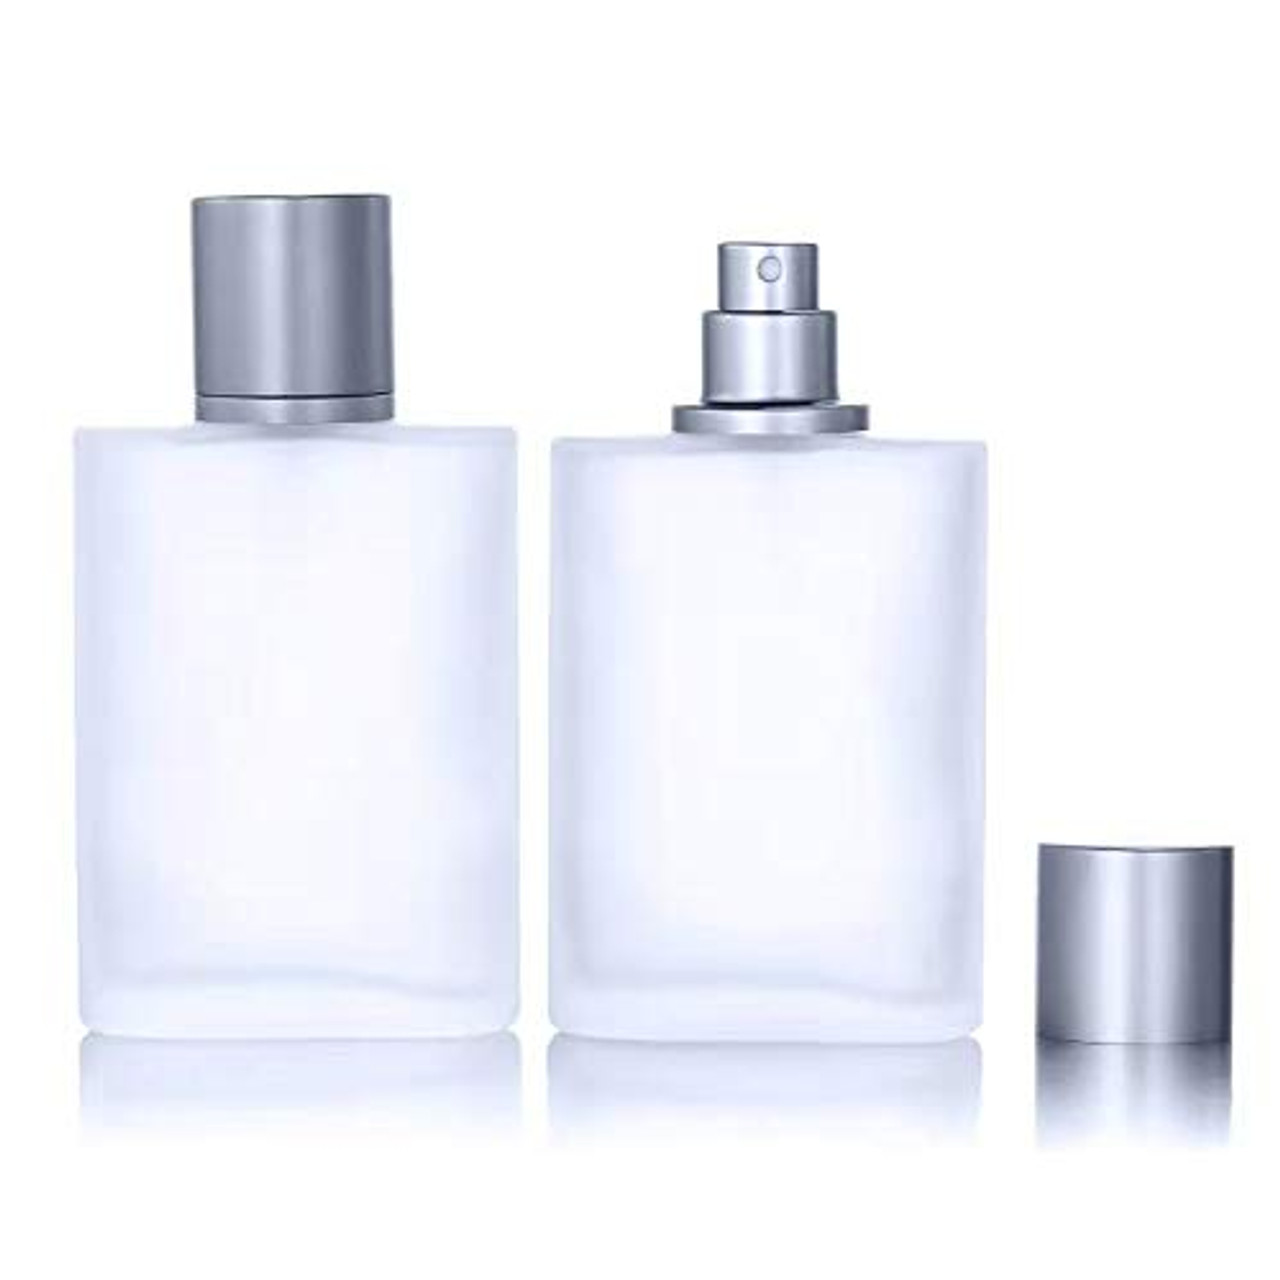 Fragrance Oil Spray 2oz Square (Purple Sprayer) - As Low As $4.75